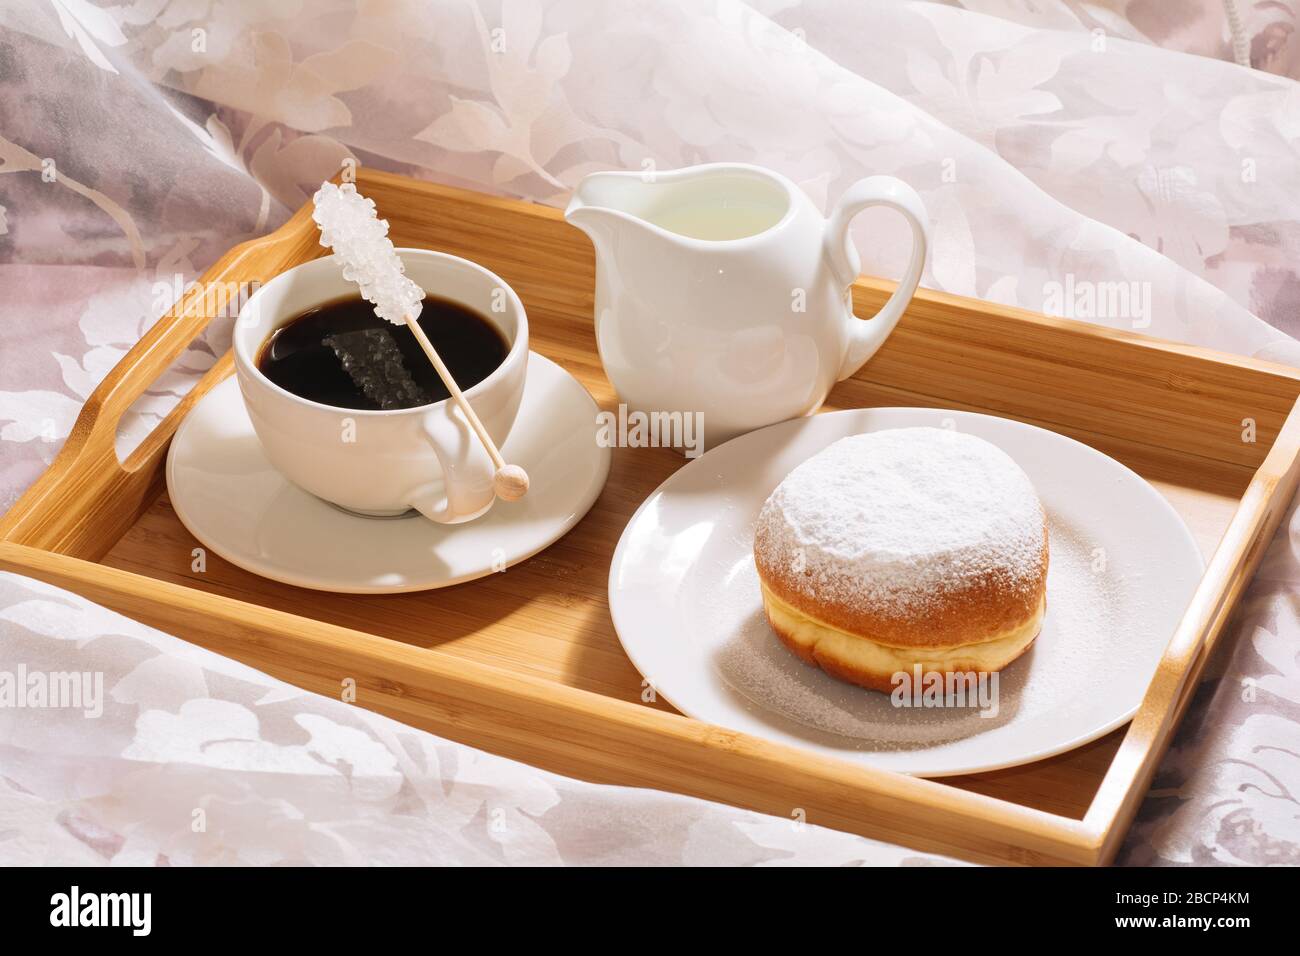 Brunch a letto con caffè appena tostato e caldo, caraffa di latte, ciambella in zucchero in polvere su un vassoio di legno in piatti bianchi. Orizzontale Foto Stock